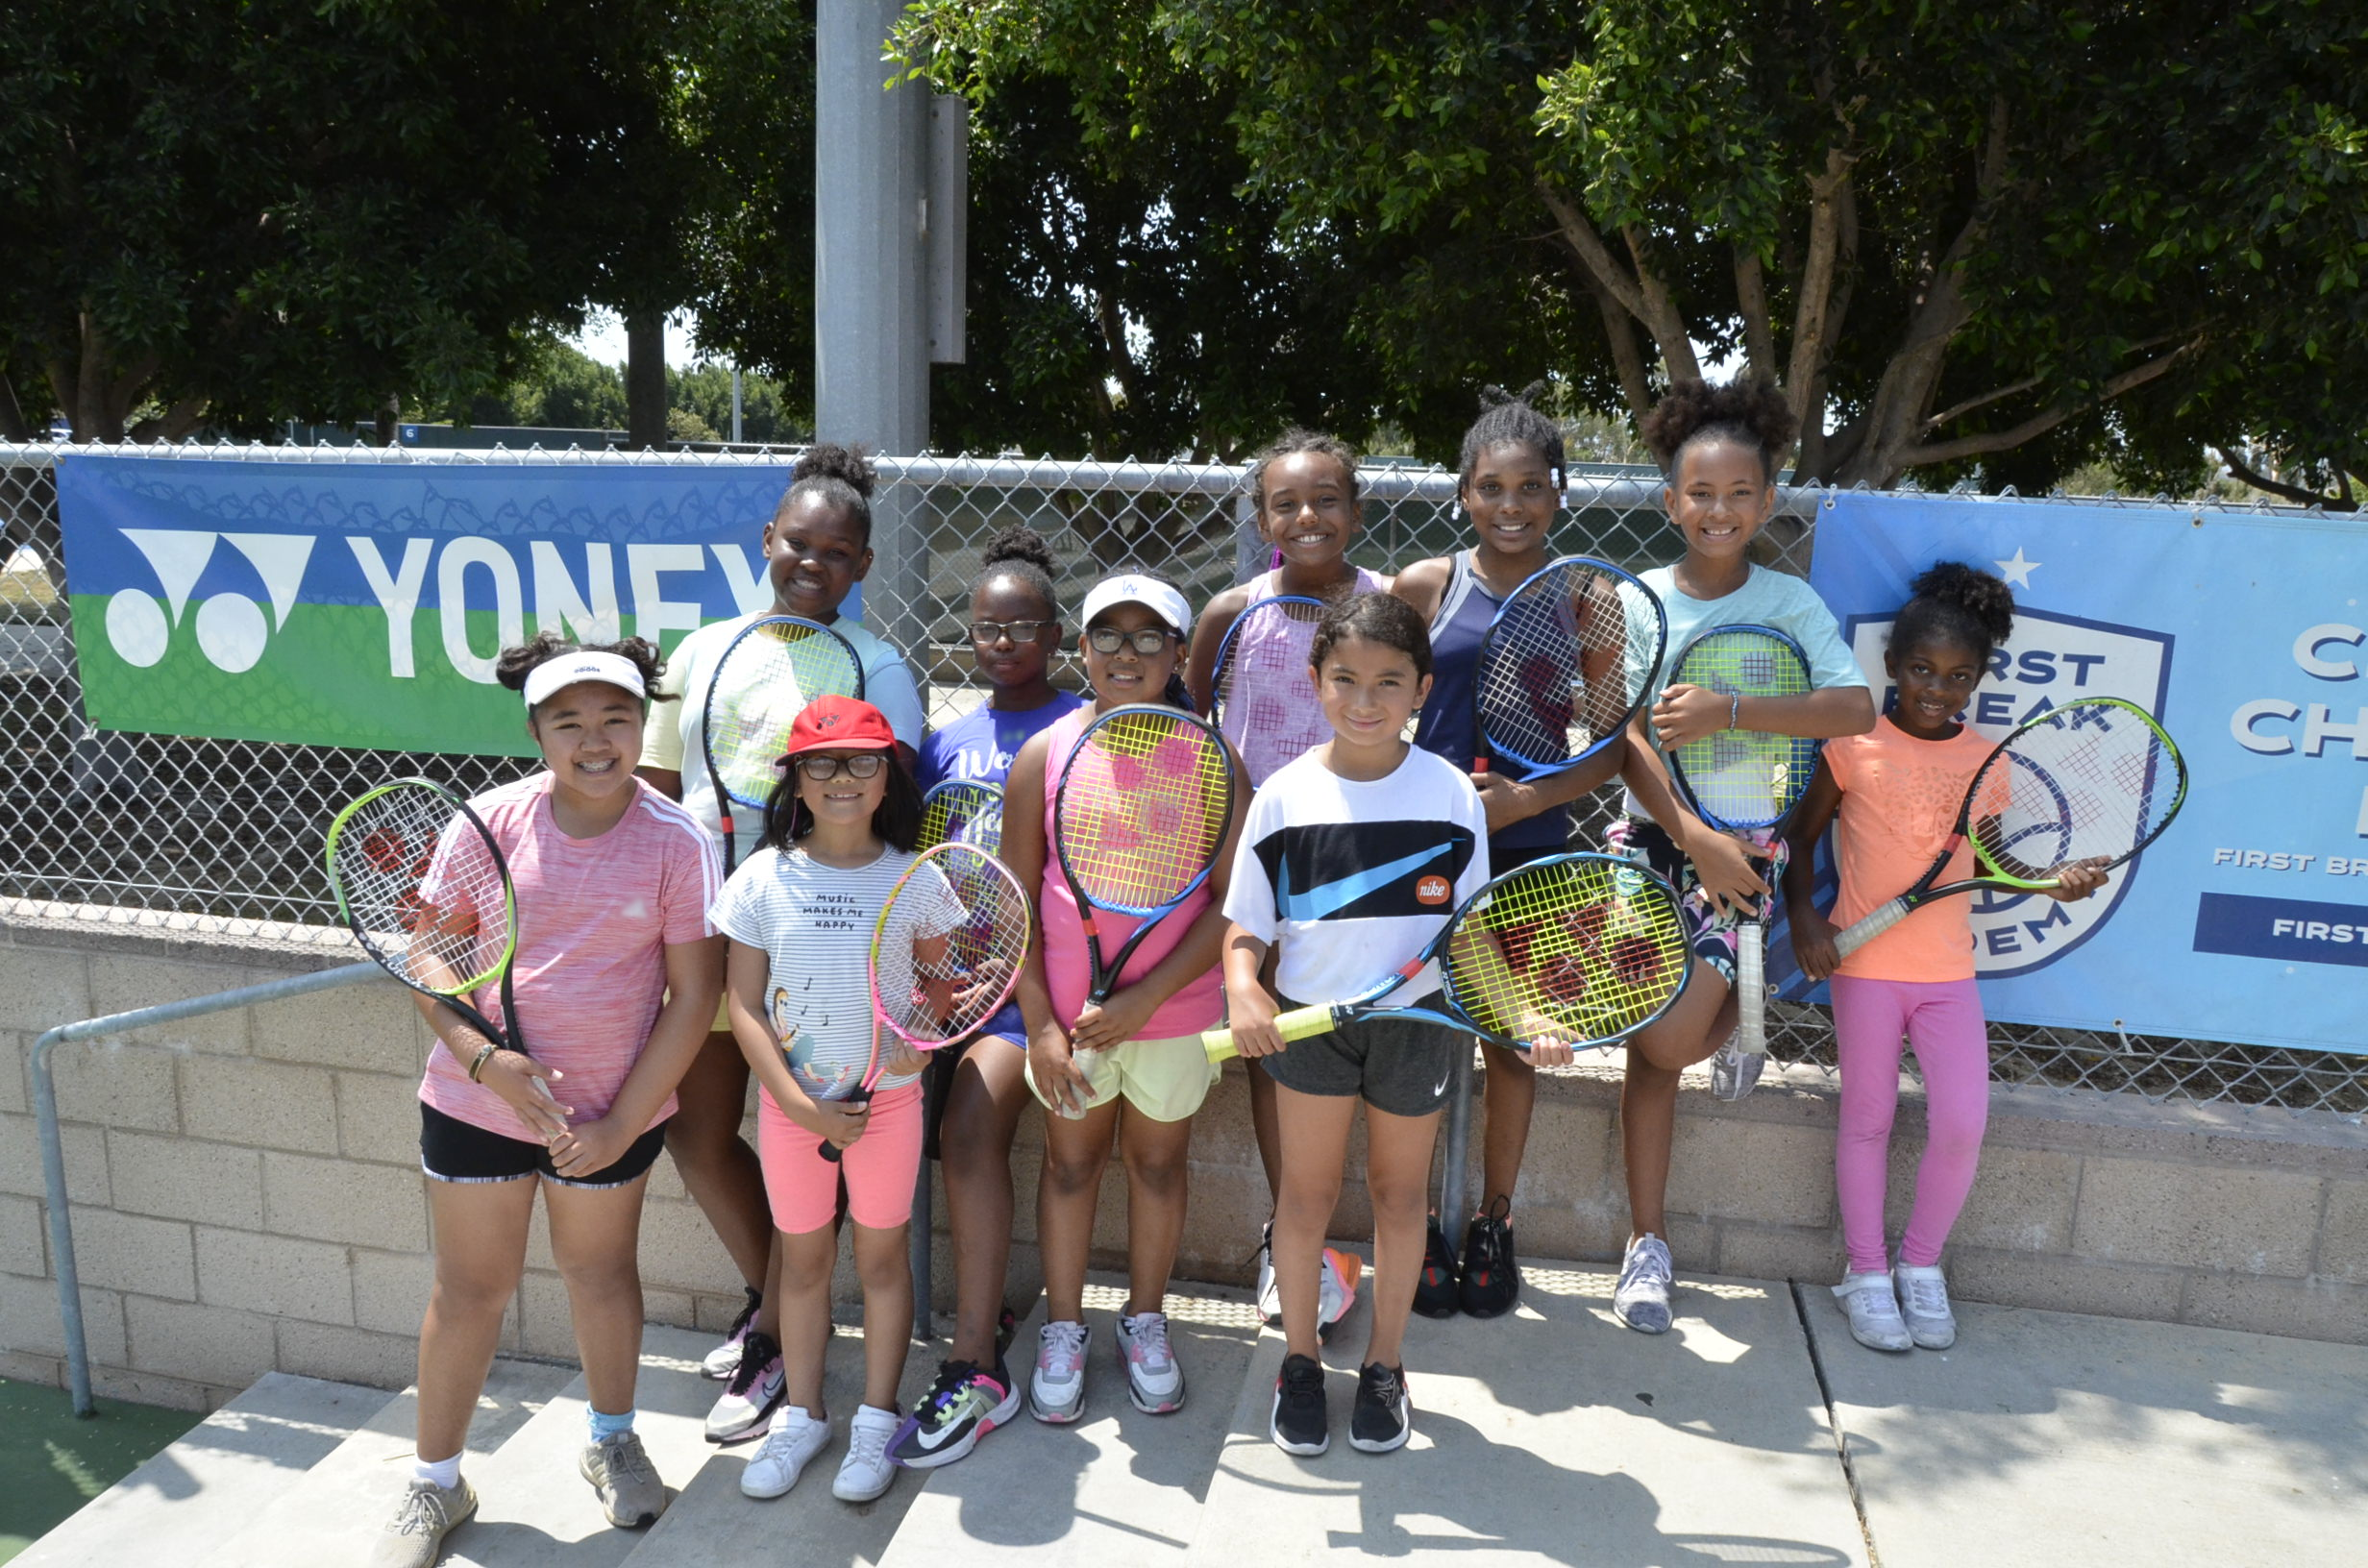 Group if tennis girls smile